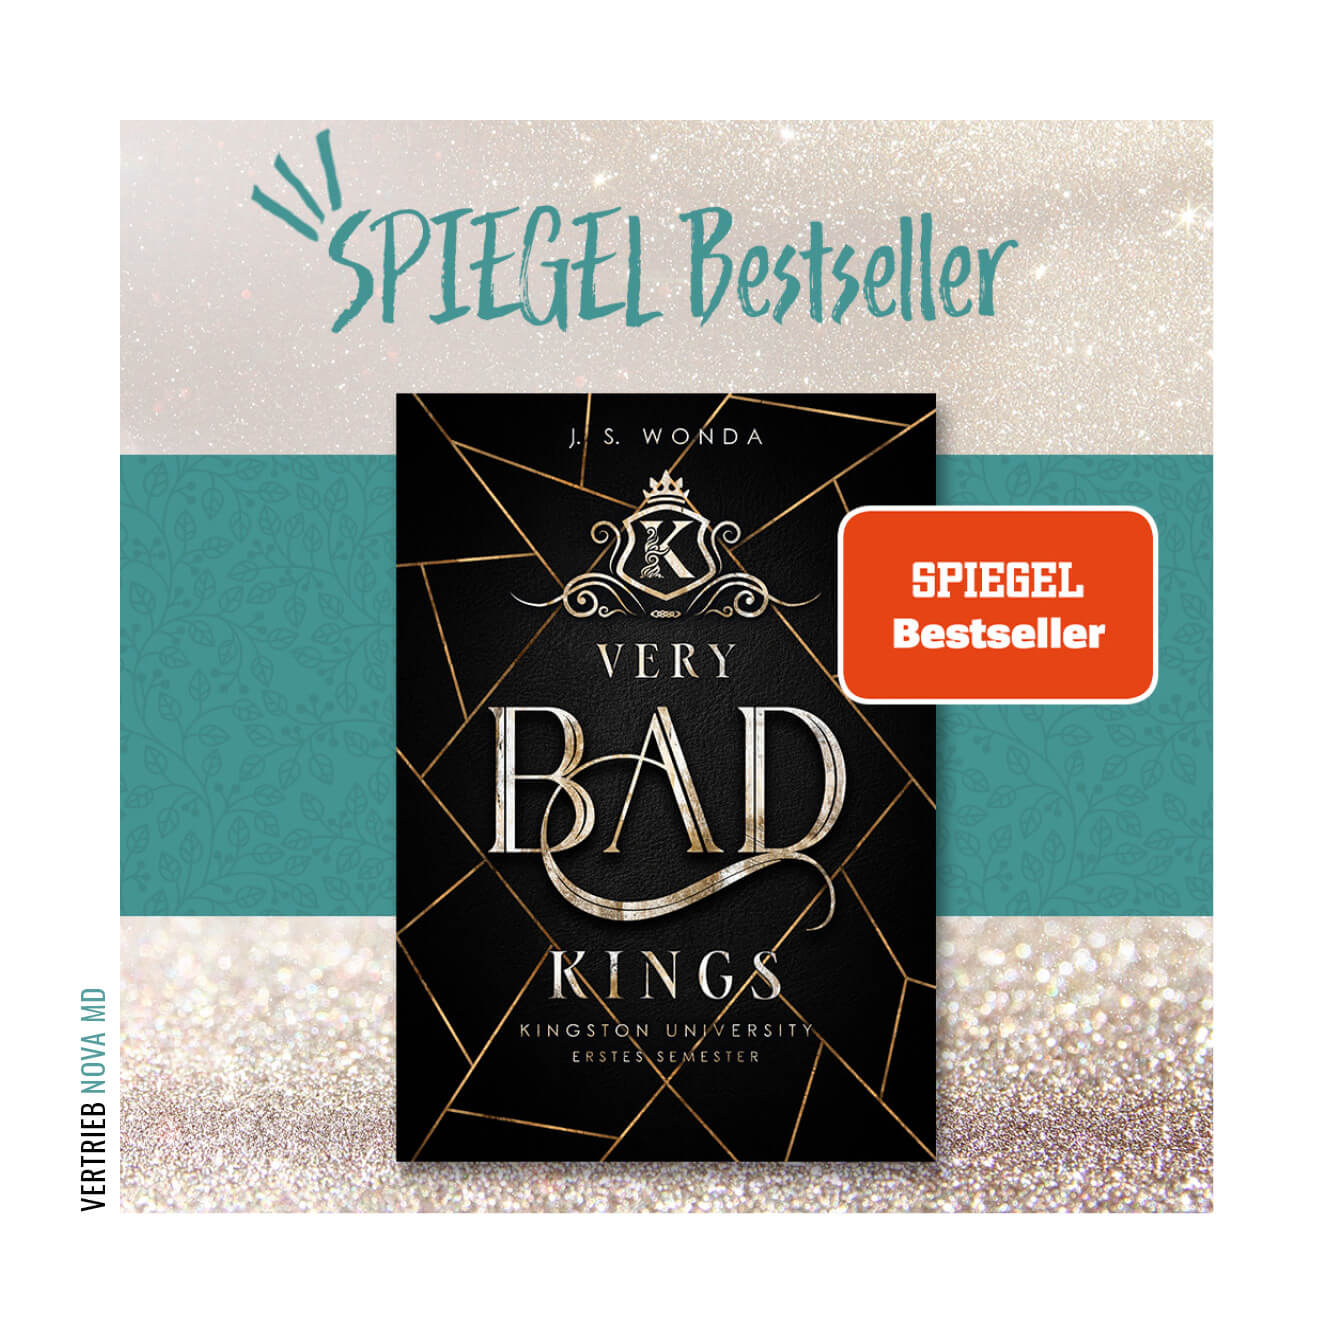 Buch "Very Bad Kings" von J.S. Wonda hat Spiegel Bestseller erreicht